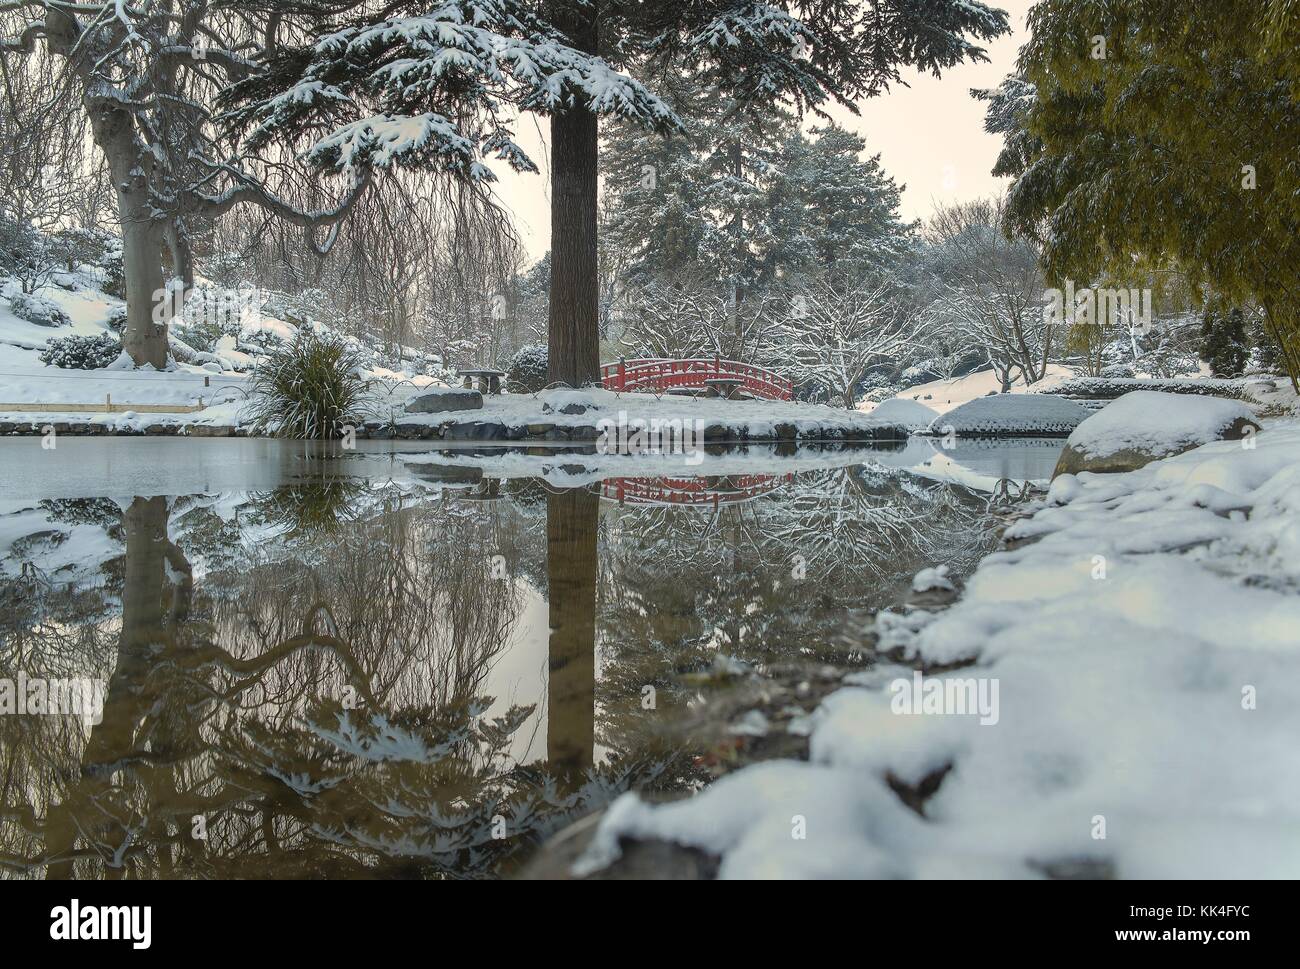 Jardins Albert Kahn - 20/01/2013 - - jardins Albert Kahn - jardins Albert Kahn de Boulogne Billancourt sous la neige de janvier - Sylvain Leser / le Pictorium Banque D'Images